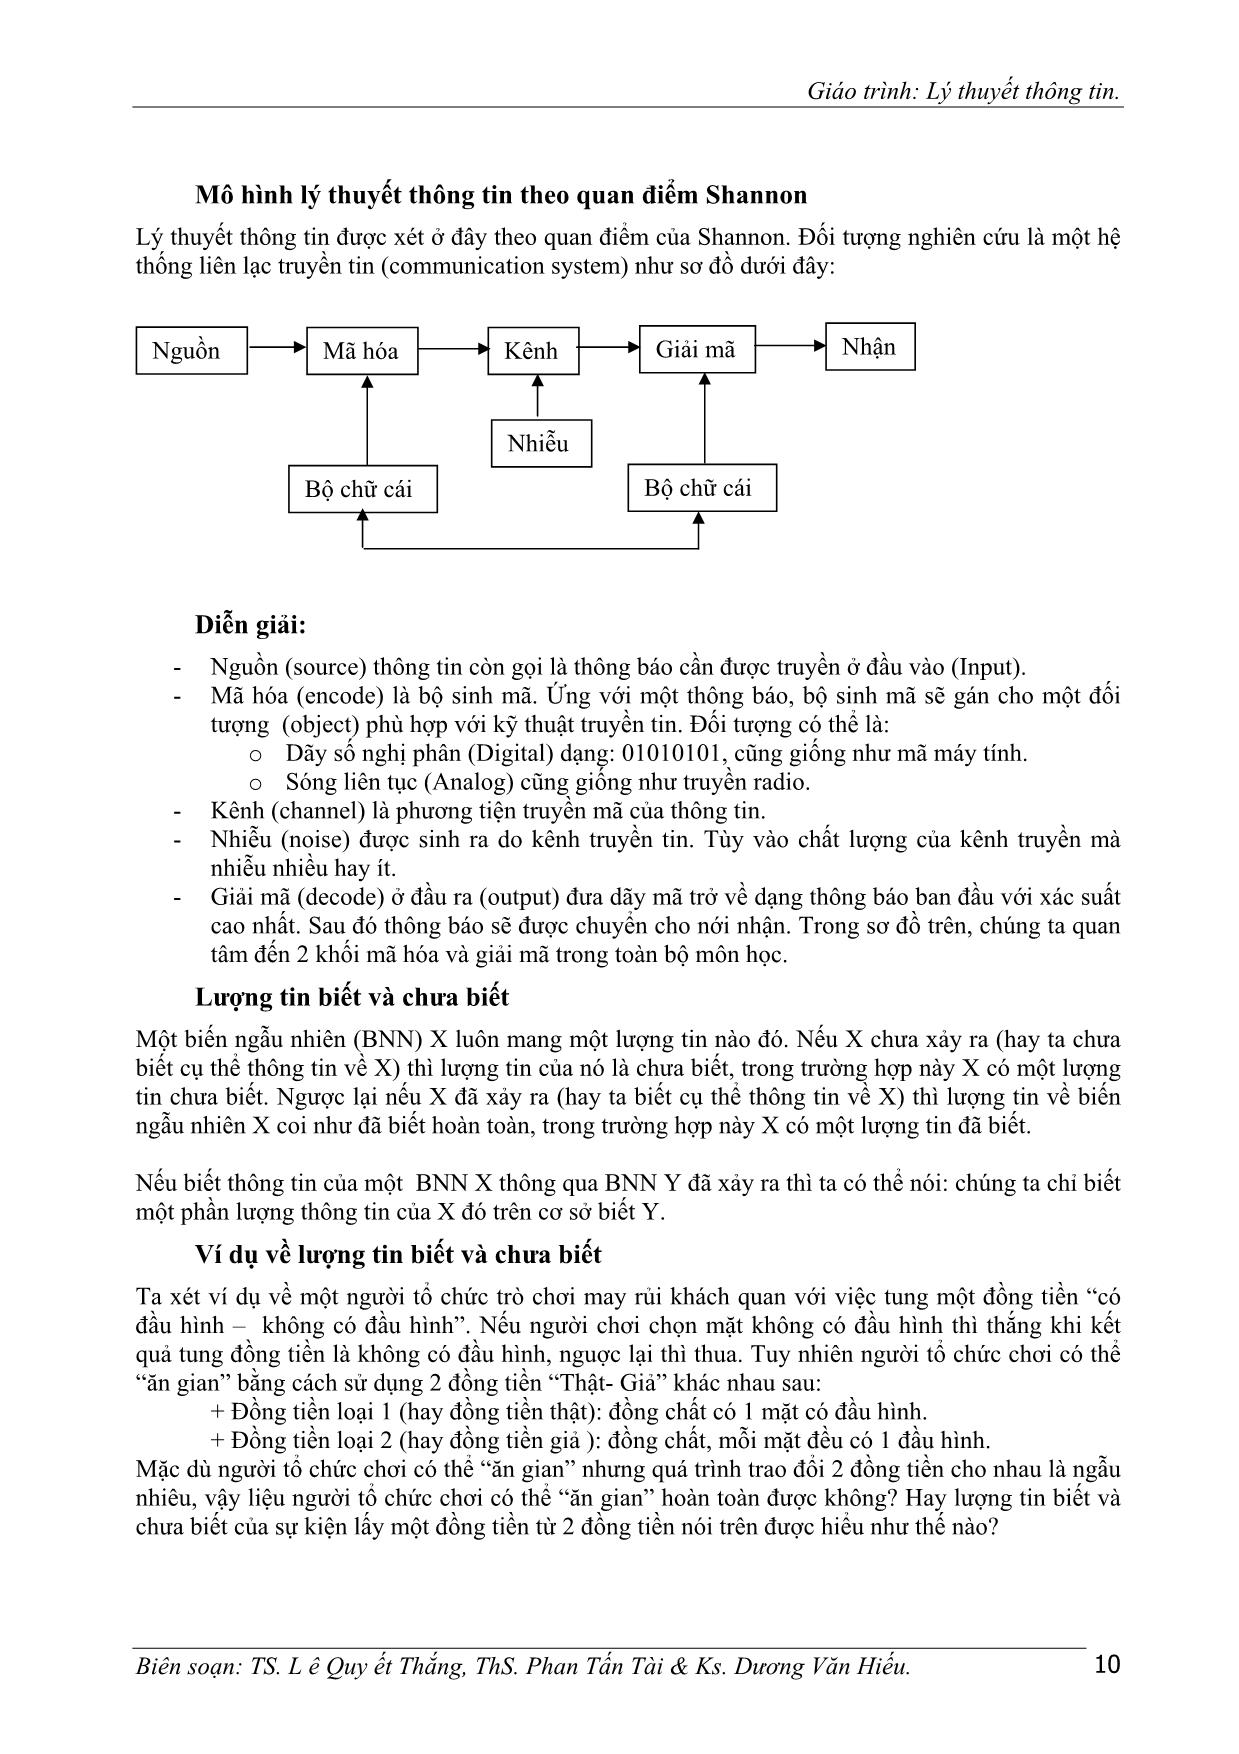 Giáo trình Lý thuyết thông tin trang 10